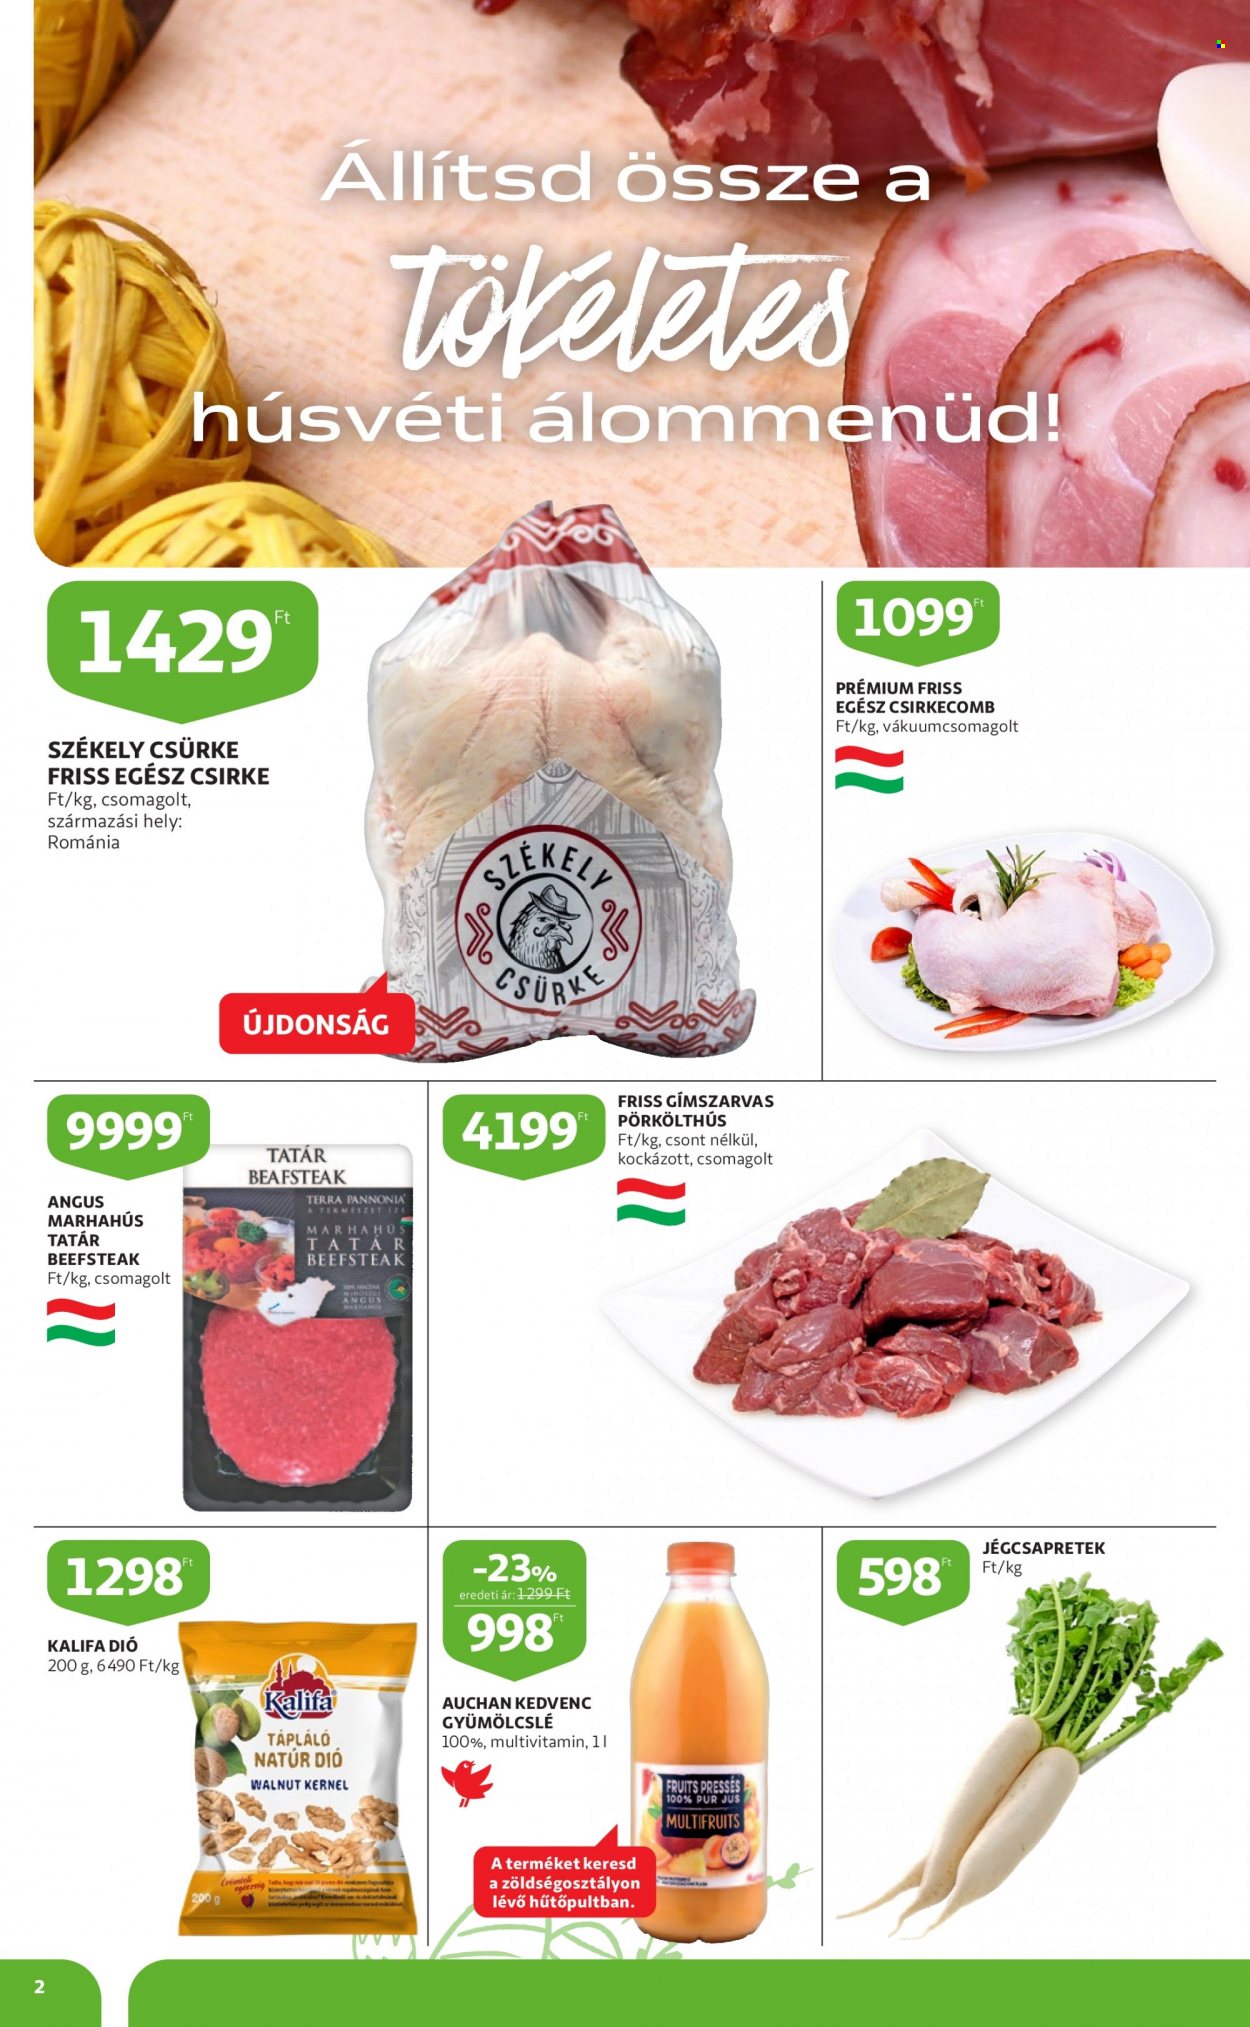 thumbnail - Auchan akciós újsága  - 2023.03.16 - 2023.04.08 - Akciós termékek - pörkölthús, jégcsapretek, csirkecomb, egész csirke, marhahús, marha tatár beefsteak, dió, gyümölcslé, Pur, multivitamin.  2. Oldal